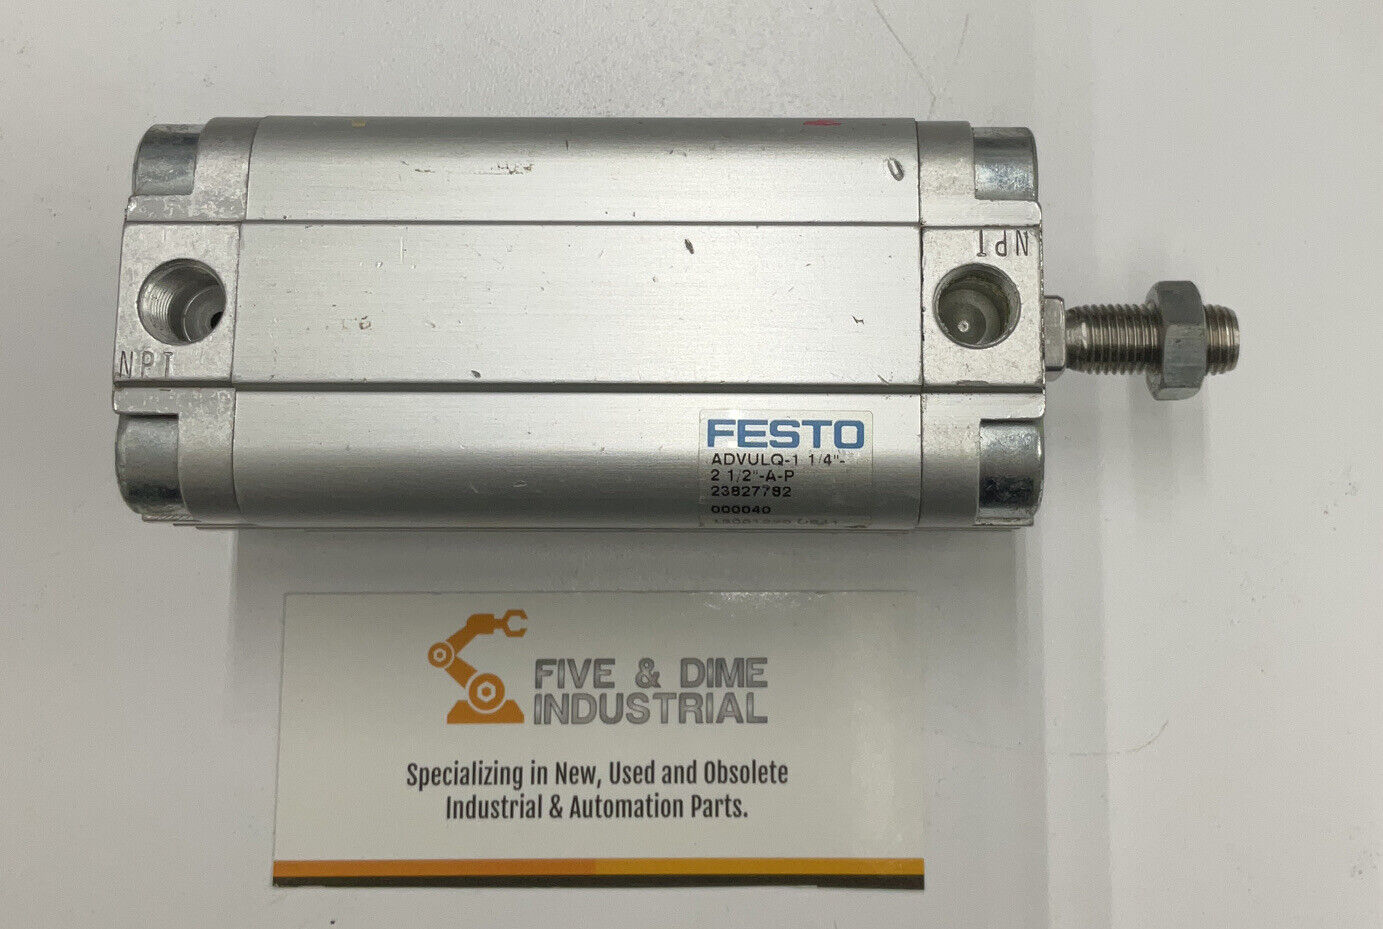 Festo ADVULQ-1 1/4" 2 1/2"-A-P 23827782 Air Cylinder (CL300)